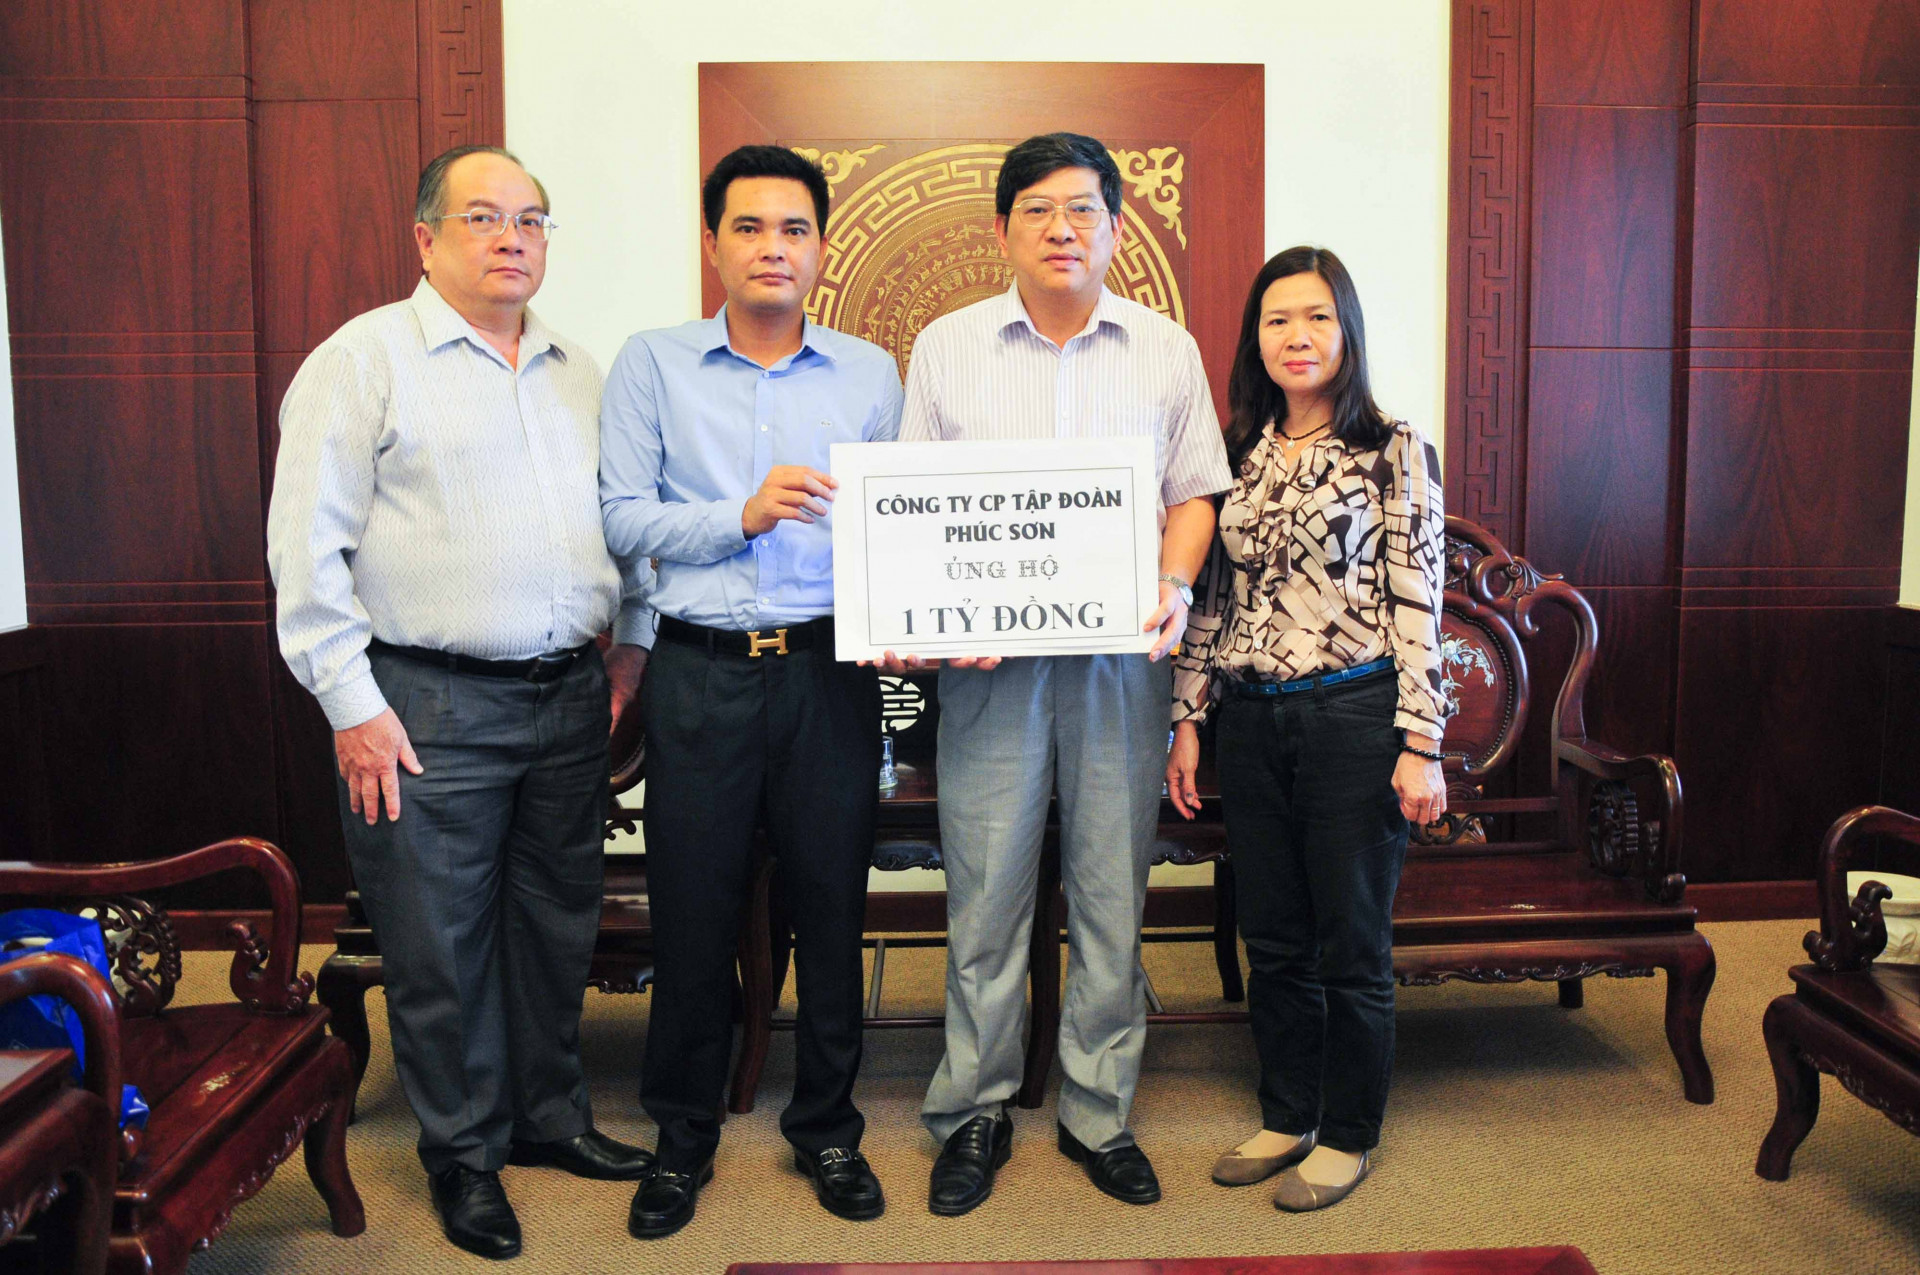 Đại diện Công ty Cổ phần Tập đoàn Phúc Sơn trao biểu trưng số tiền cho lãnh đạo tỉnh